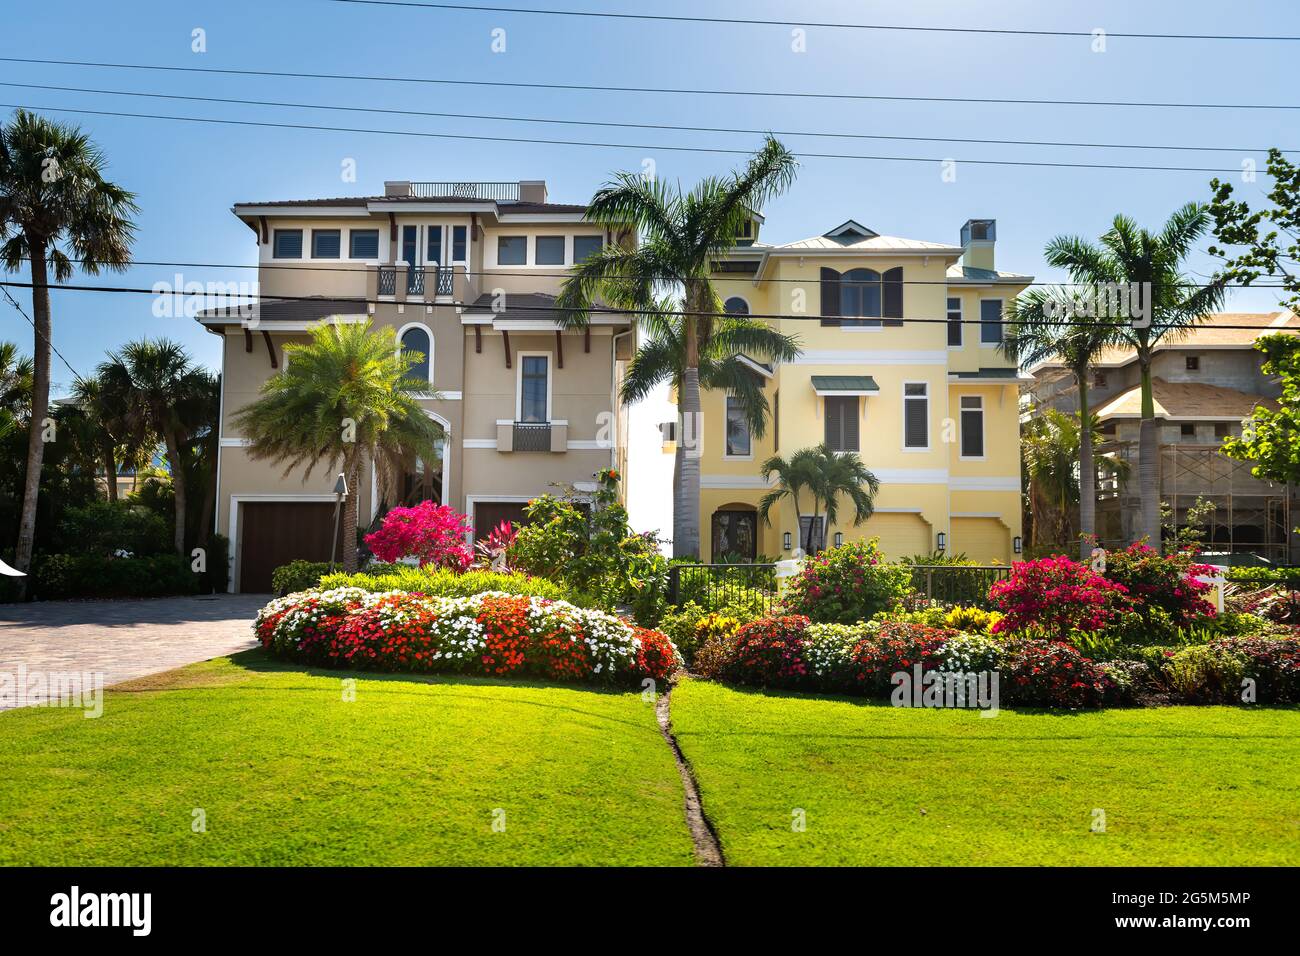 Bonita Springs, Florida Golf von mexiko Küste mit Gärten und bunten Luxus-Villa Herrenhaus Häuser moderne Architektur am Wasser und Eindrivew Stockfoto